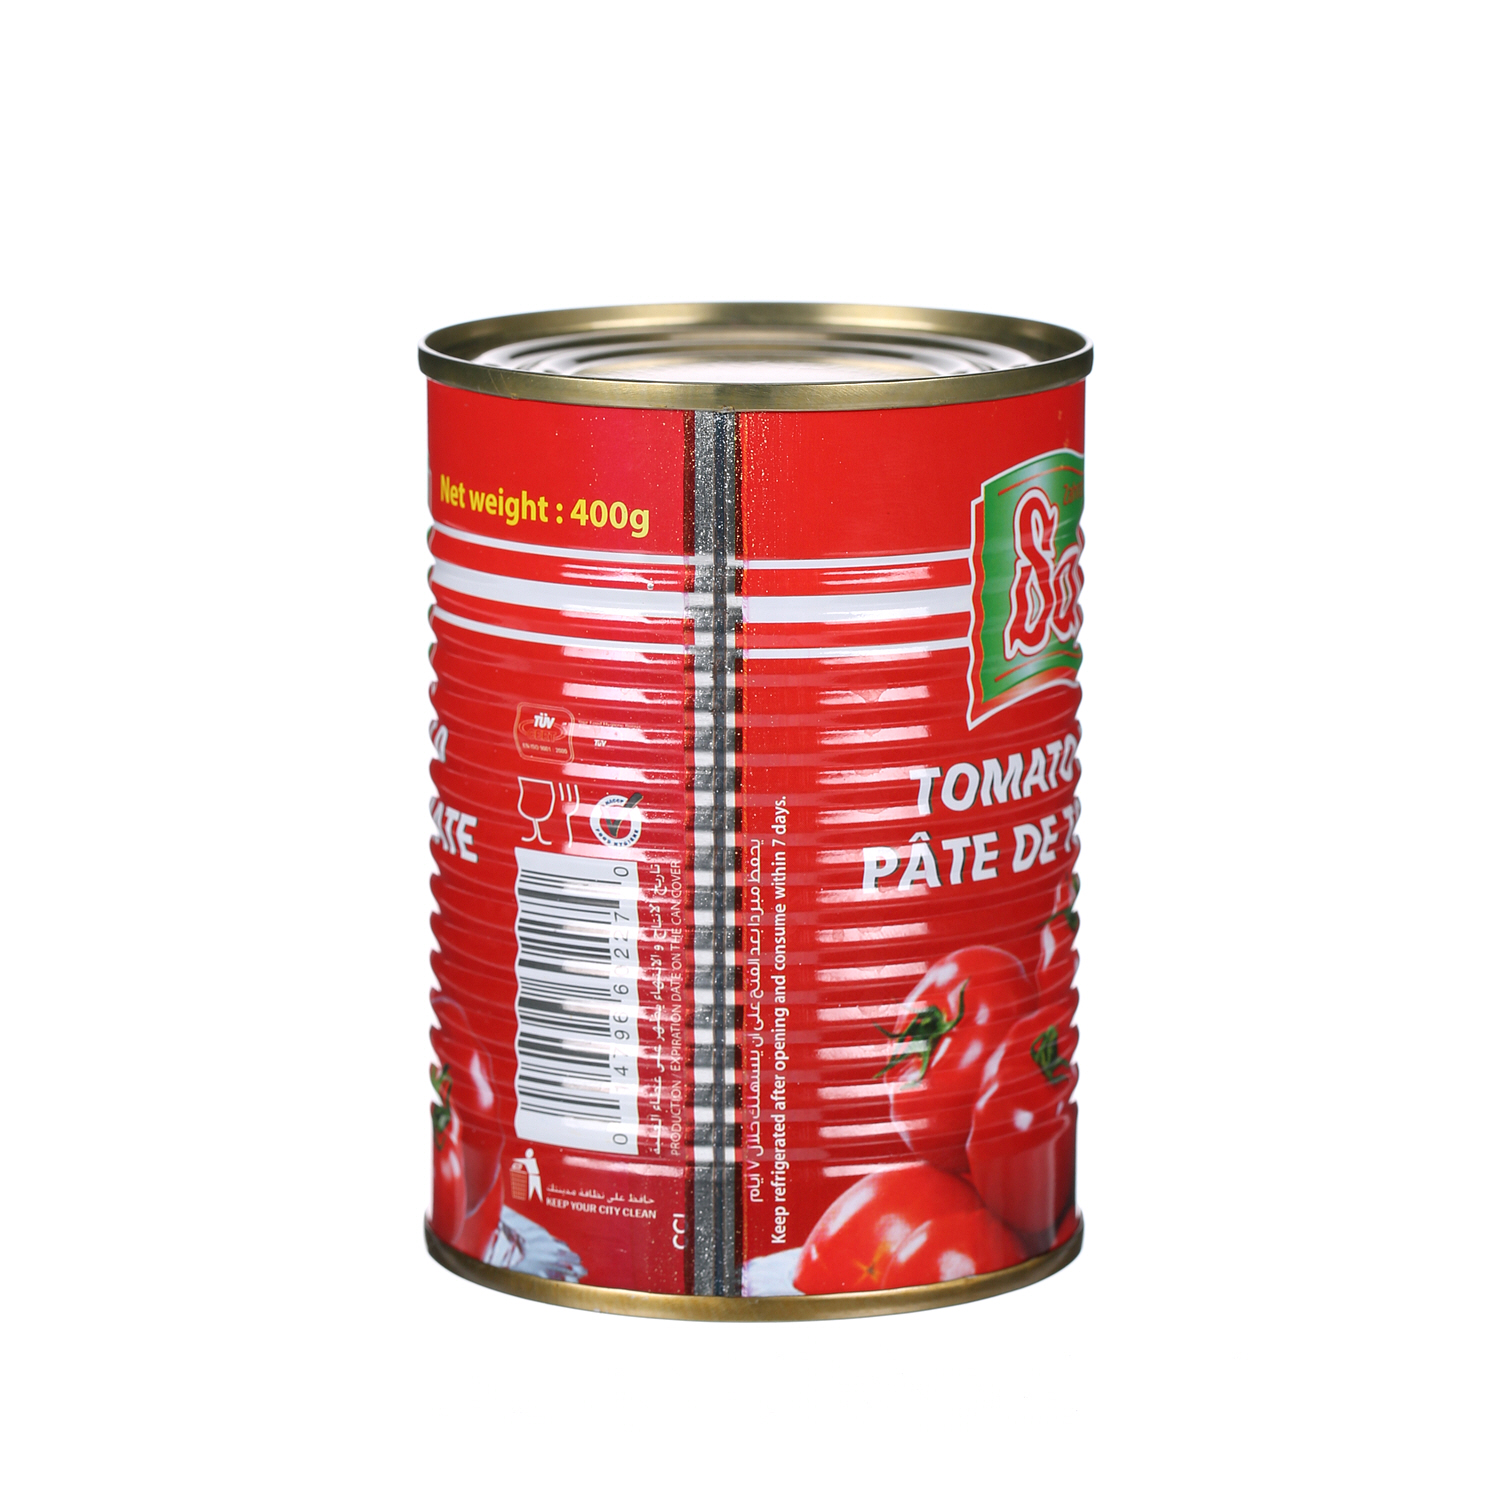 Safa Tomato Paste 400gm